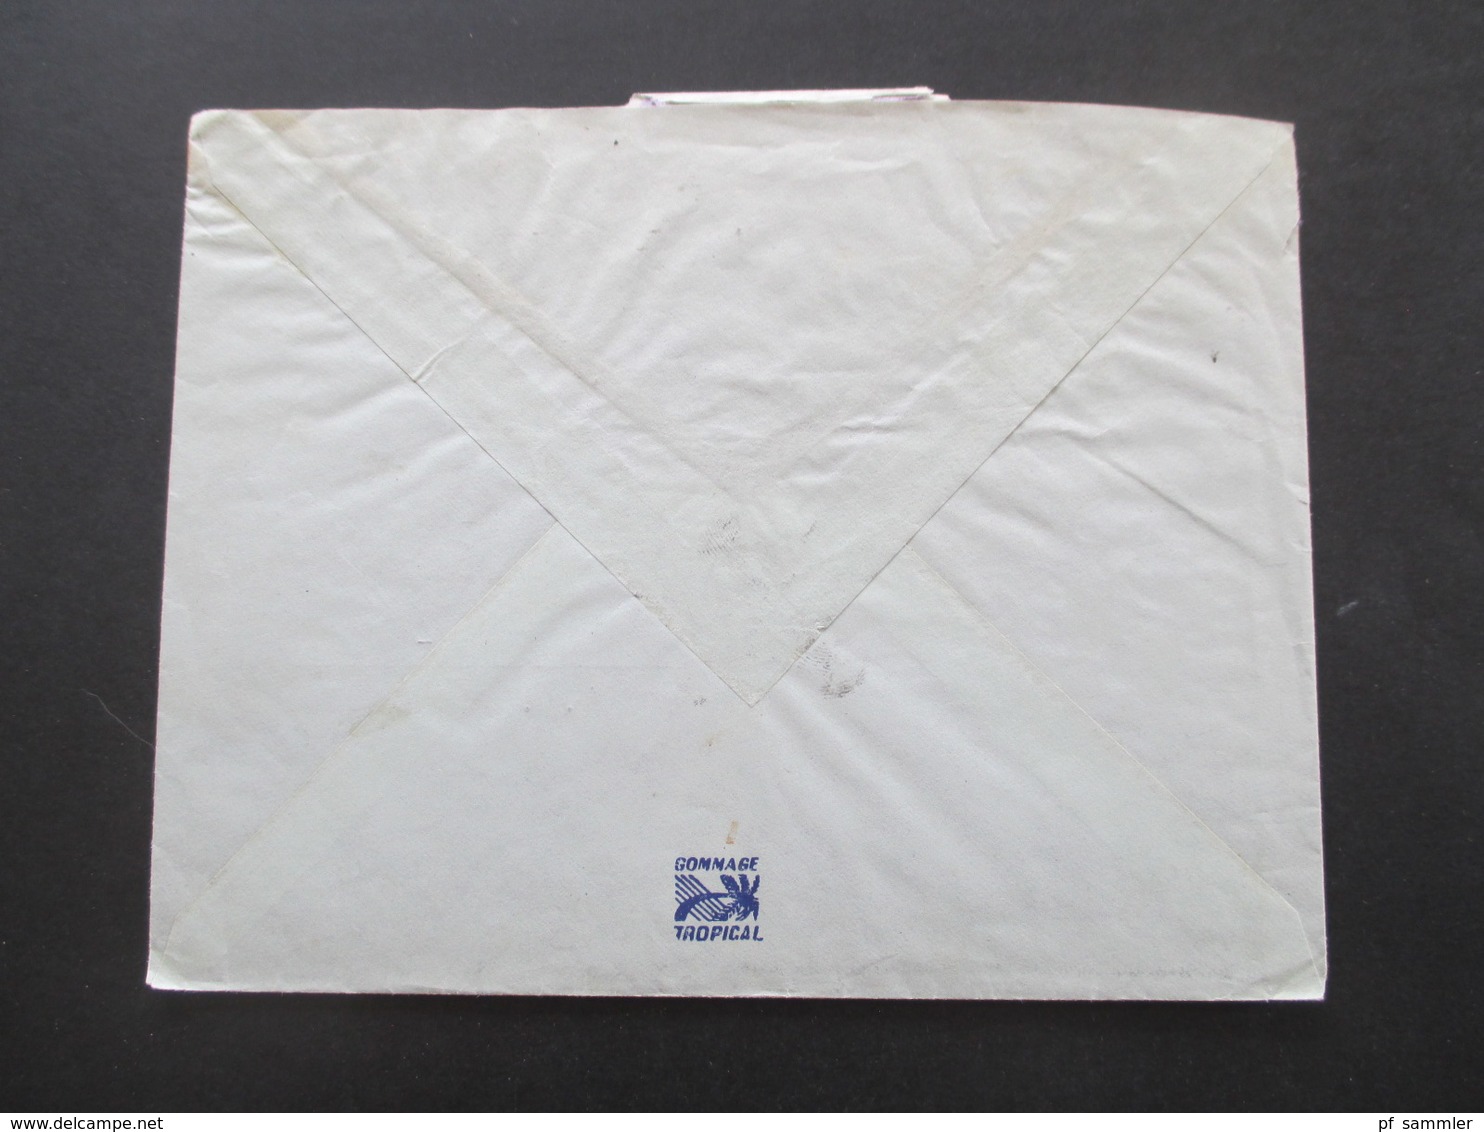 Vietnam / Süd Vietnam 1965 Auslandsbrief Firmenbrief nach Schweden Air Mail / Luftpost Gommage Tropical